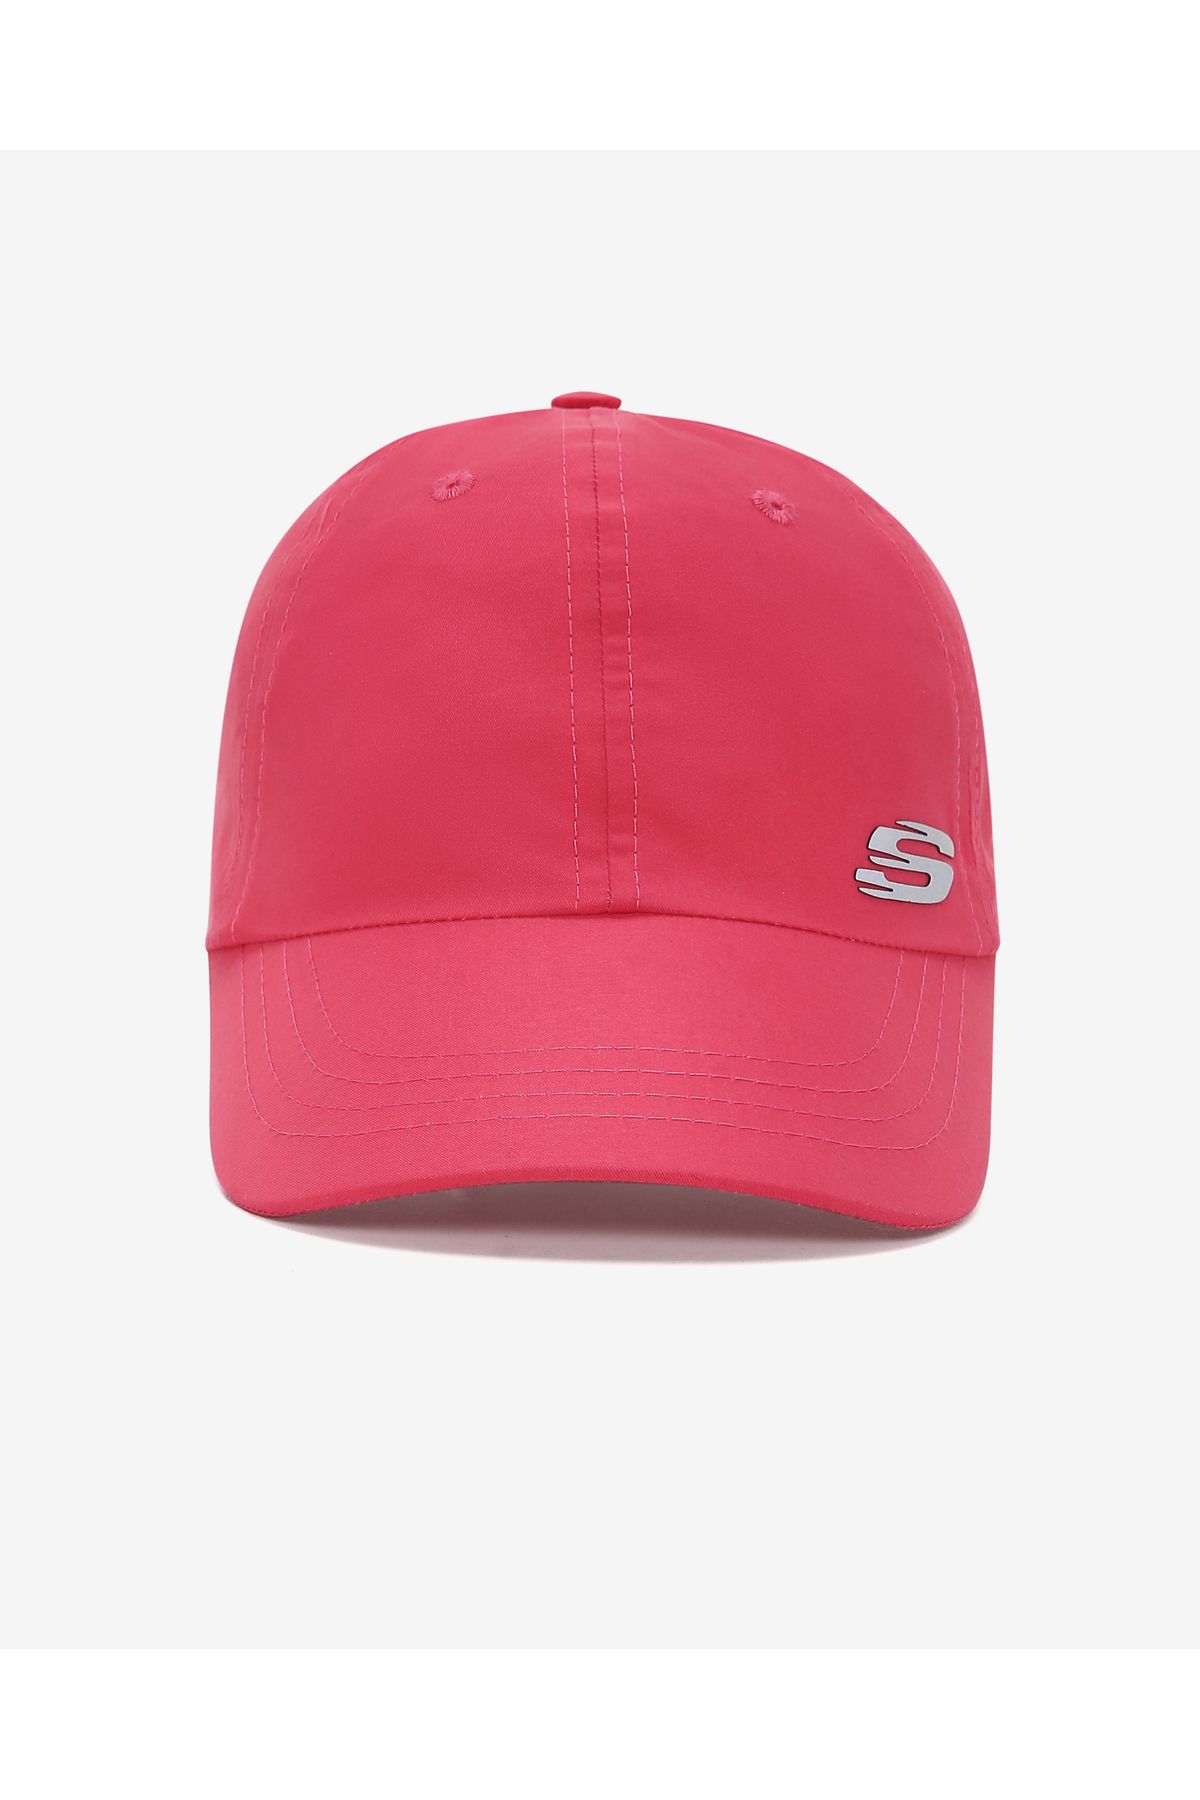 Skechers W Summer Acc Cap Cap Kadın Pembe Şapka S231480-512